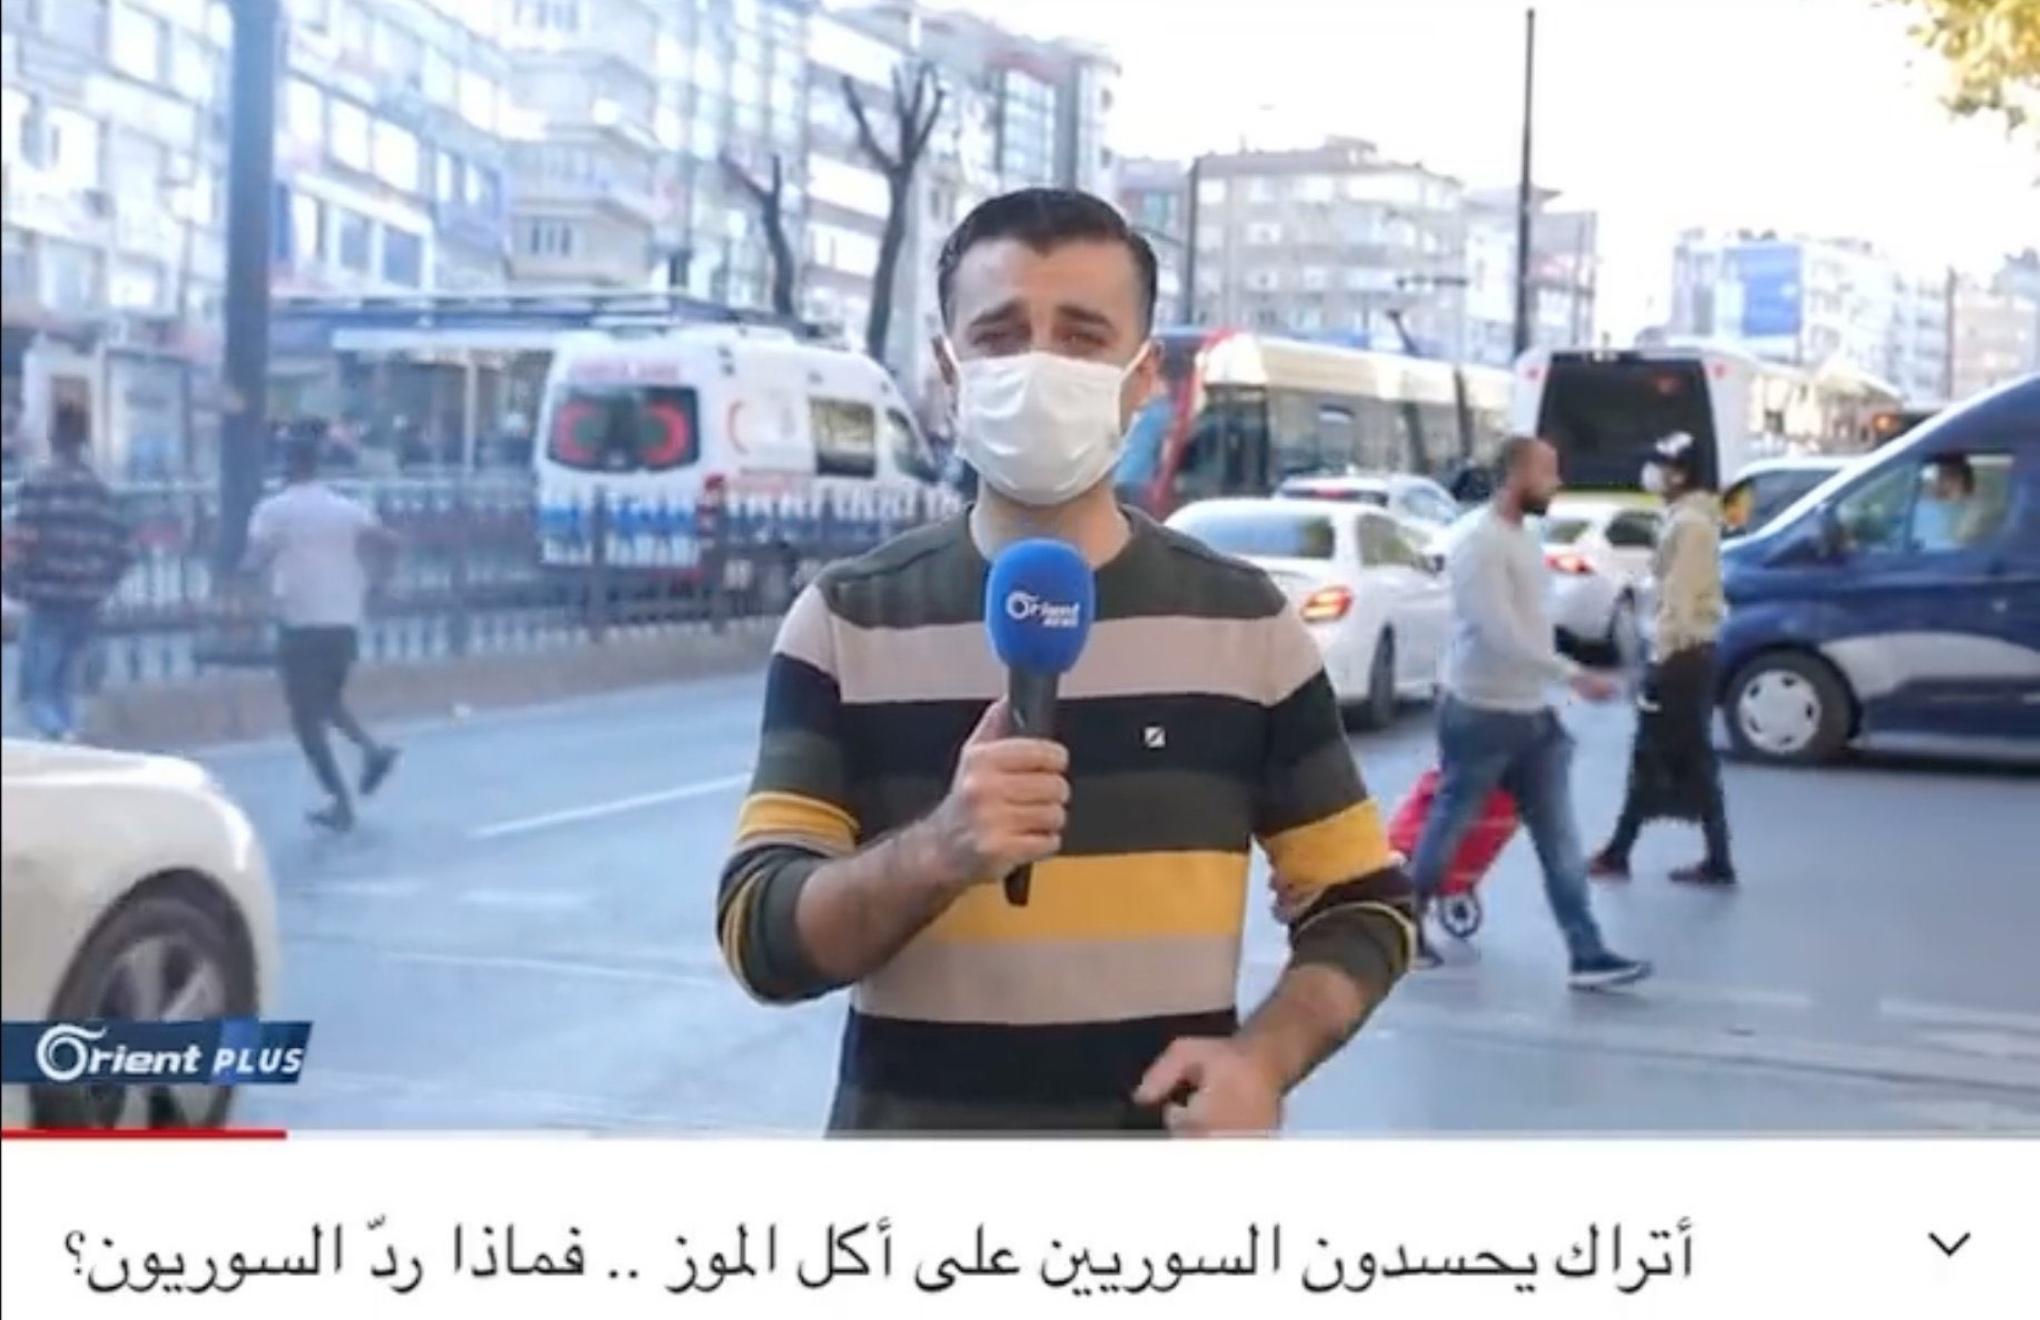 “Muz yeme” videolarını haberleştiren Suriyeli gazeteciye sınır dışı tehdidi